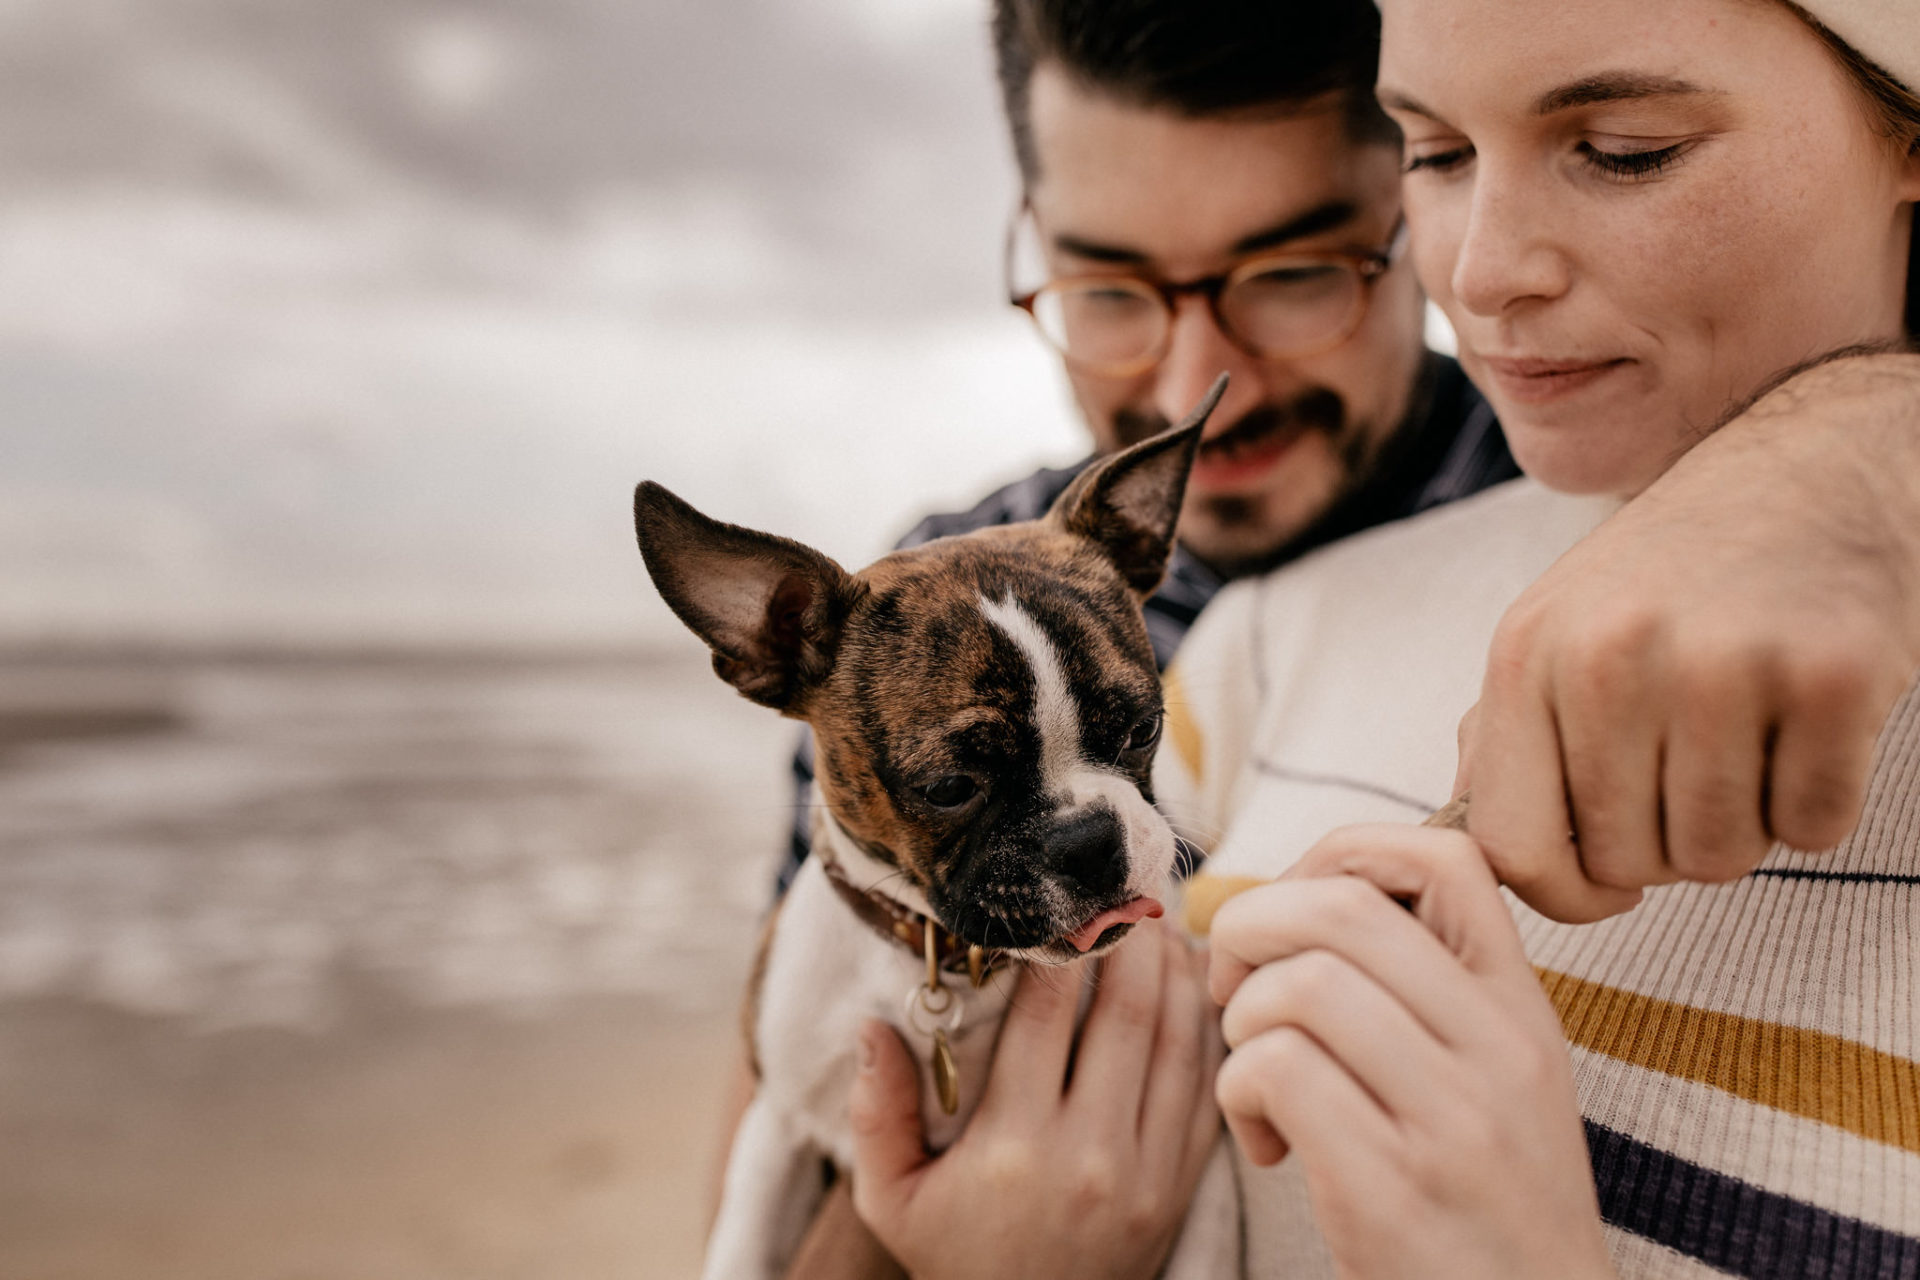 ungestellte dokumentarische kreative hochzeitsbilder-hochzeitsfotograf Australien-St Kilda Beach spaziergang-hunde in australien-boston terrier Welpe